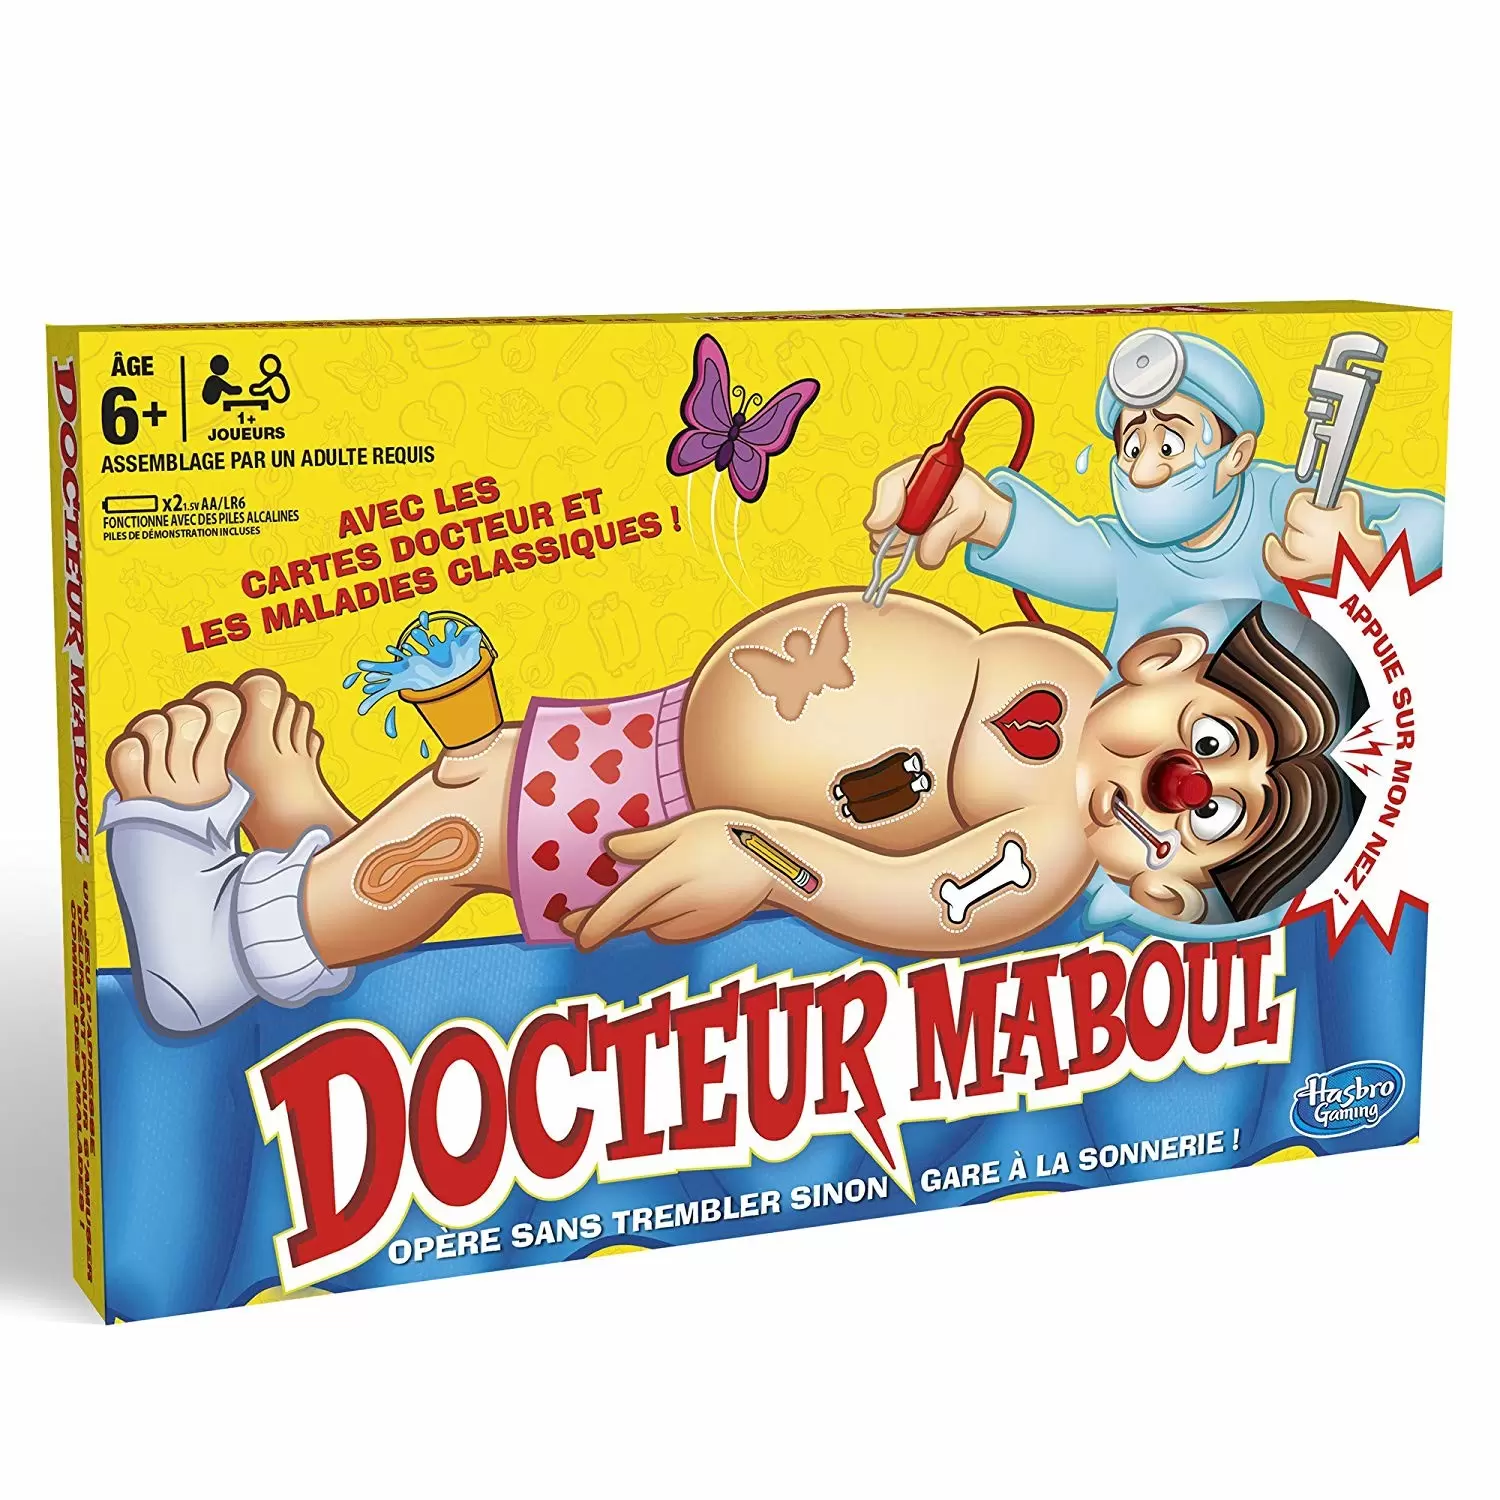 Docteur Maboul - Docteur maboul classique